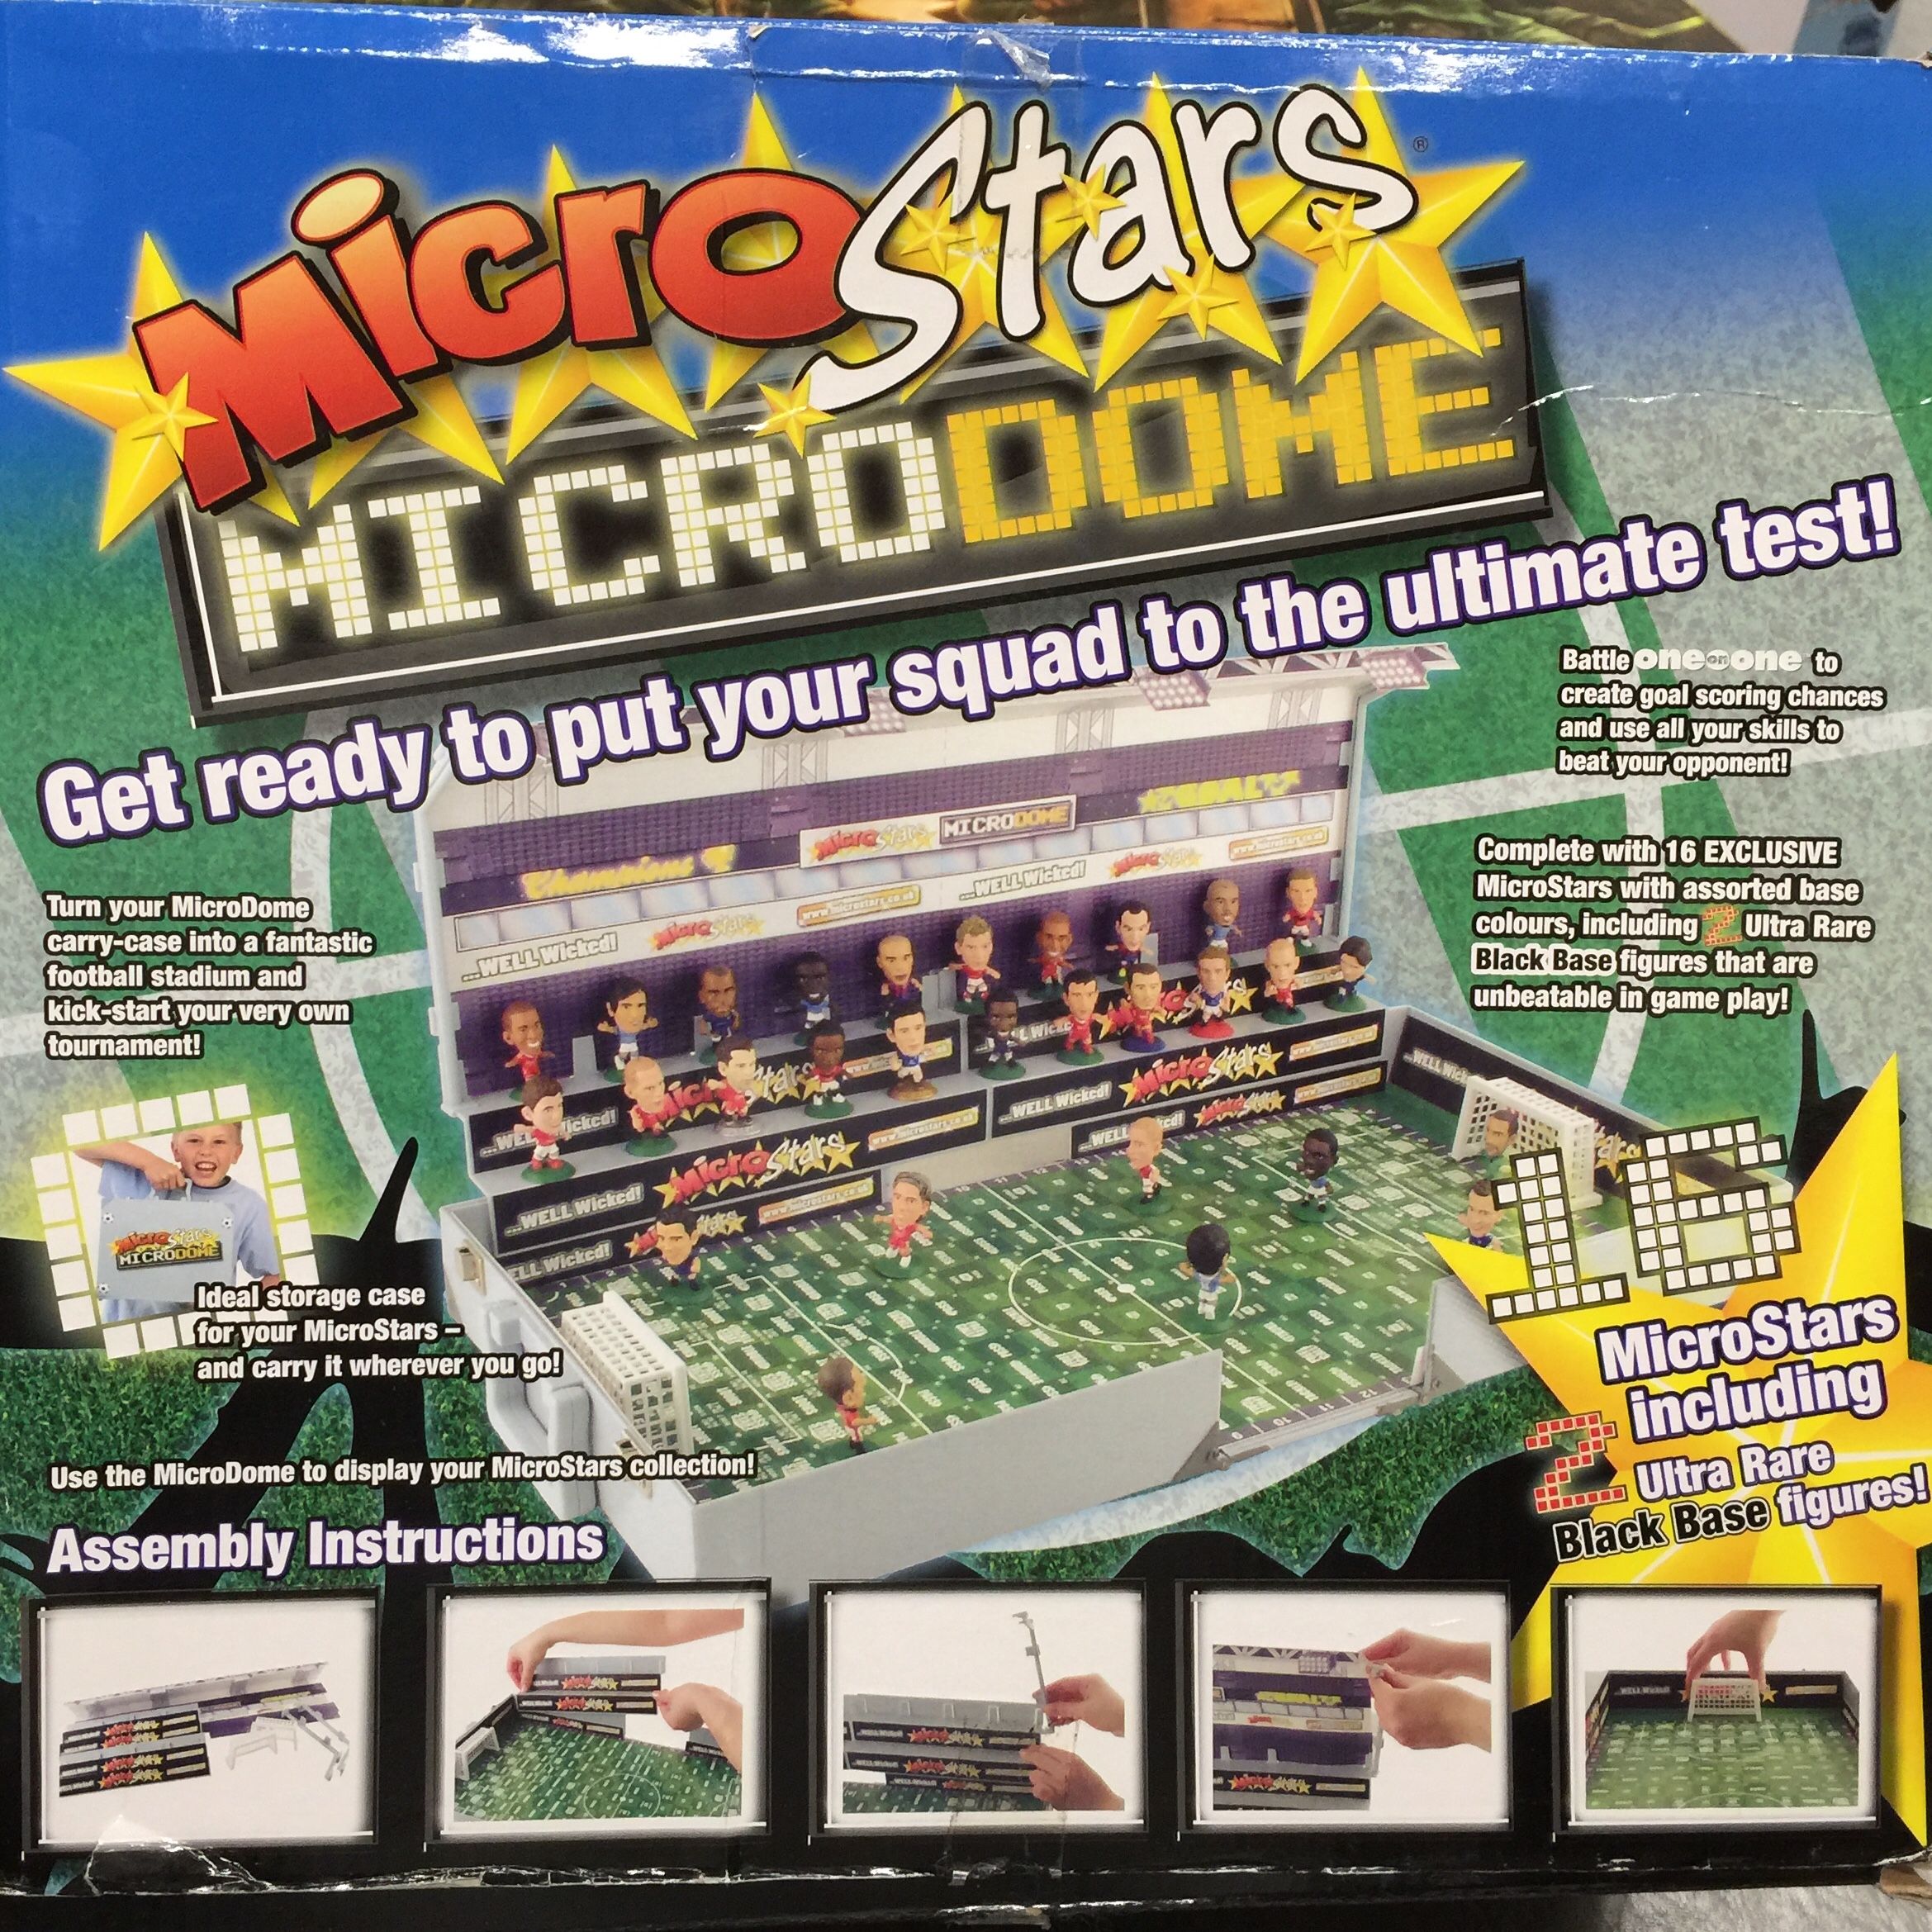 MicroStars Microdome Soccer